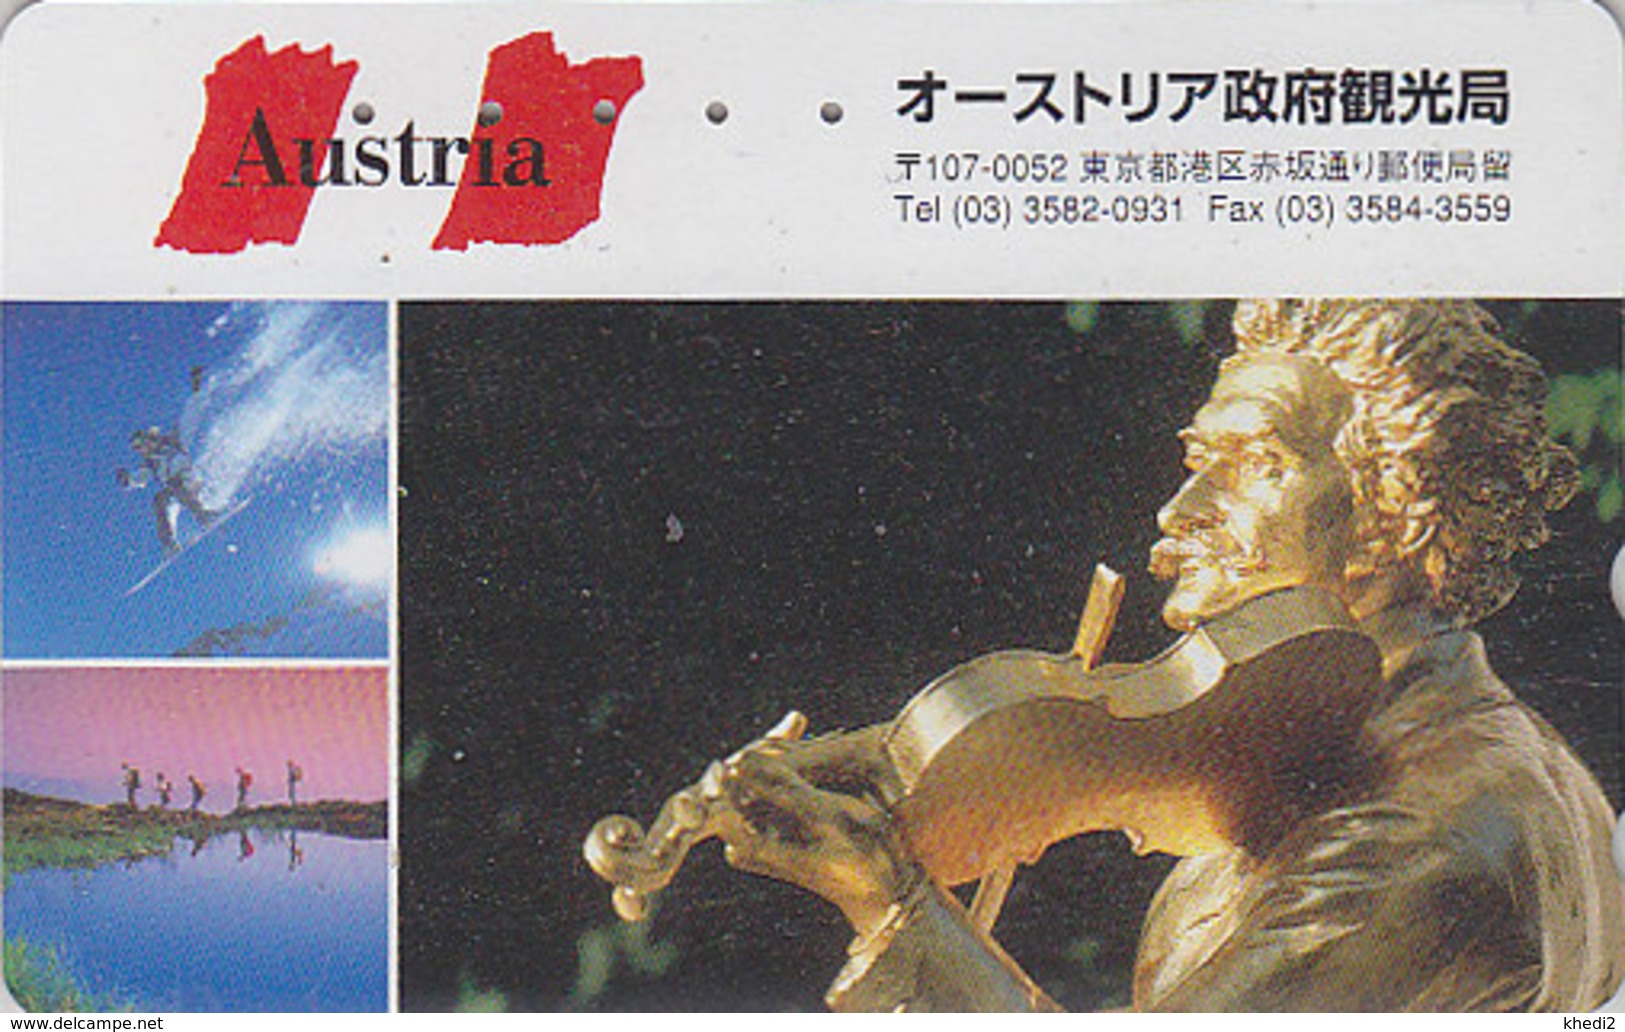 Télécarte Japon / 110-016 - Série 1000 ANS AUTRICHE - Musique STRAUSS & Violon - Japan Phonecard - AUSTRIA Rel TK - 10 - Musique